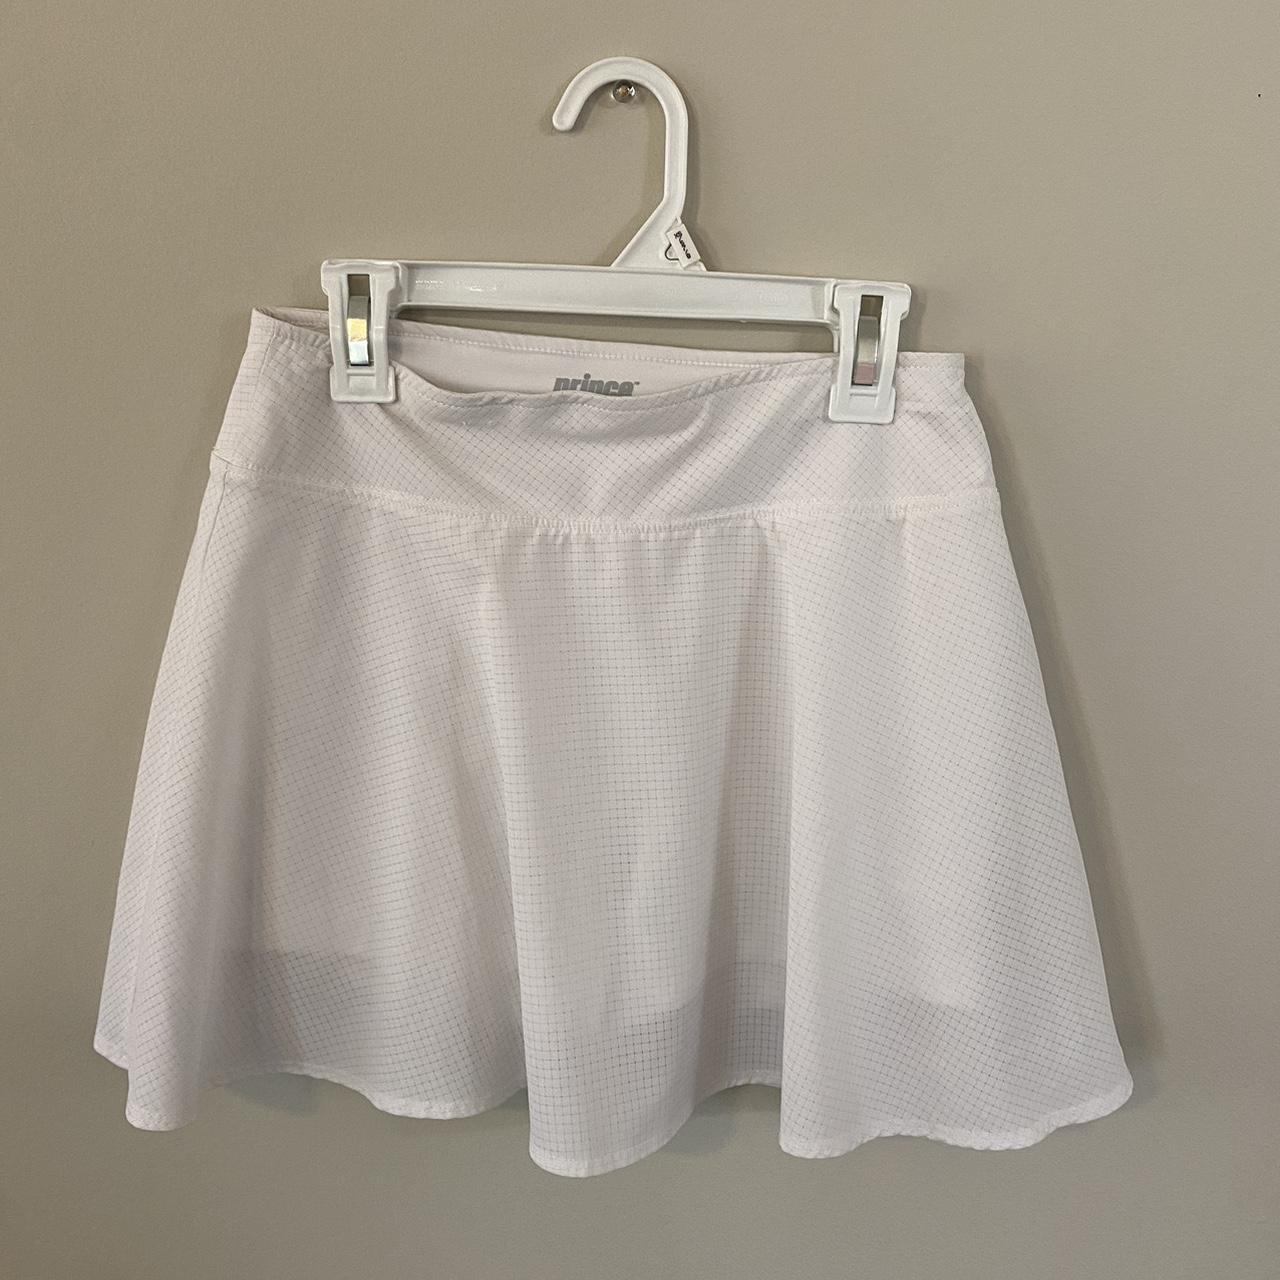 Prince Women's White Skirt (2)